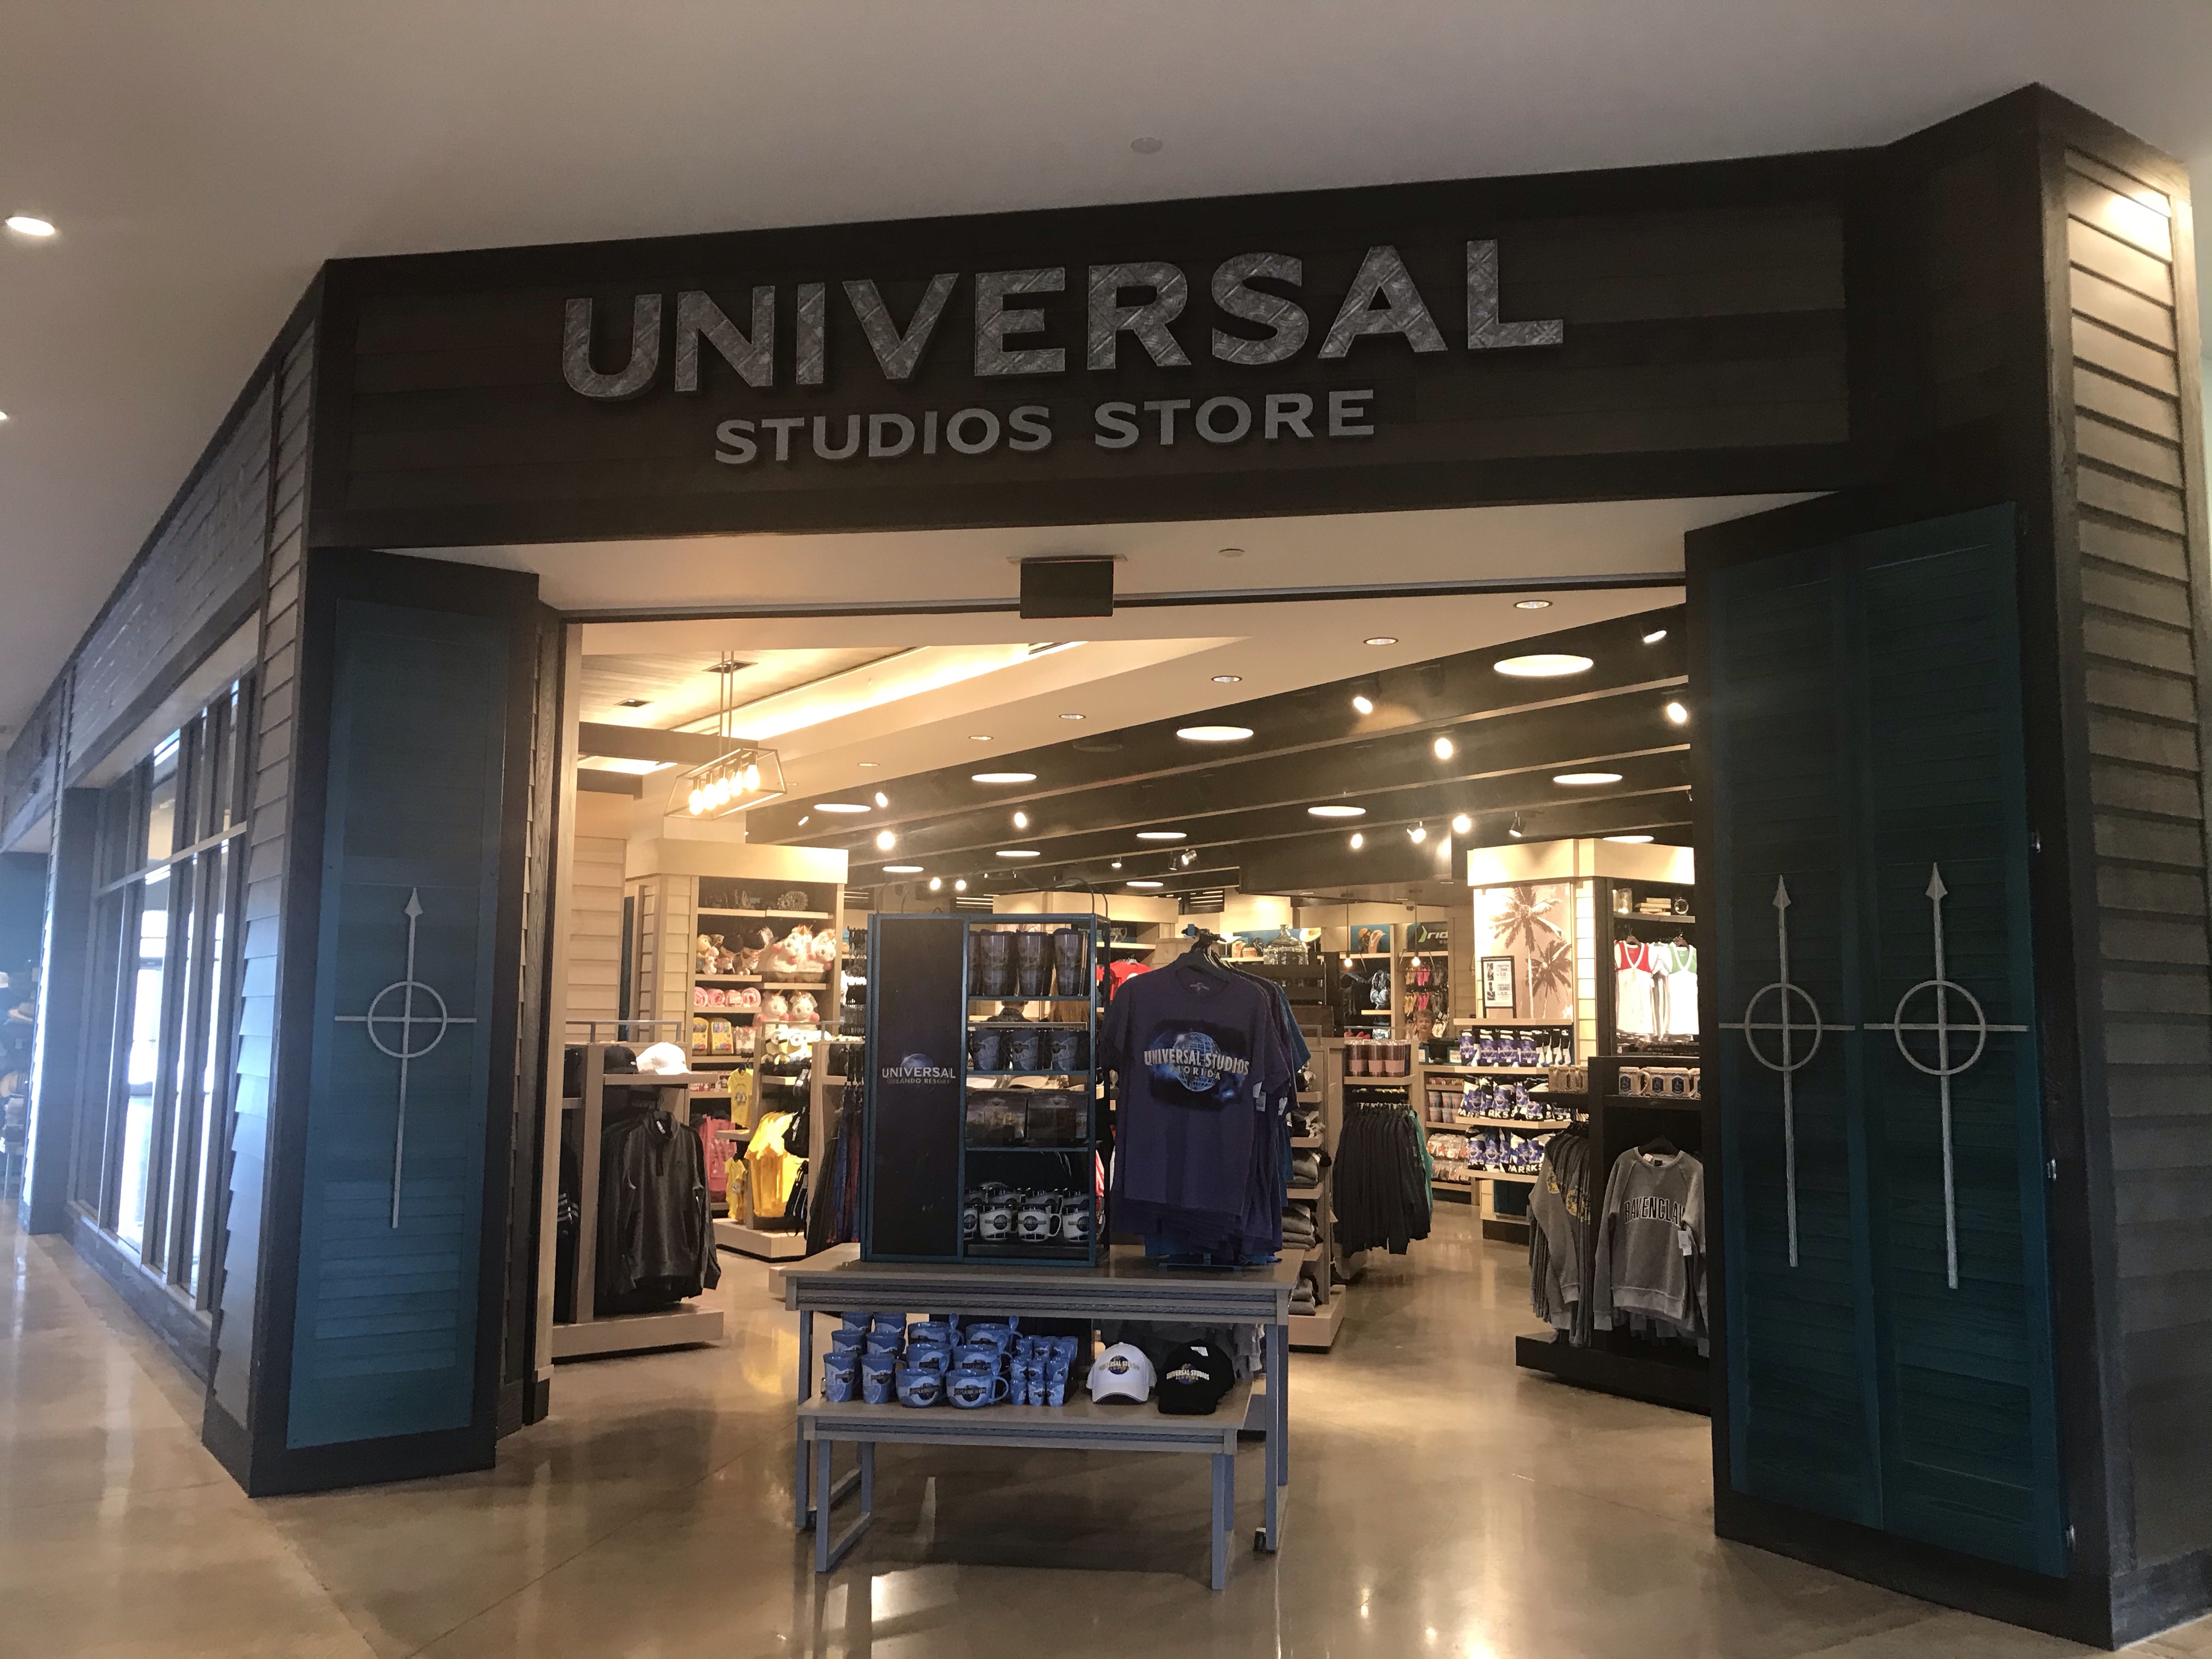 Universal Studios Store at Sapphire Falls Resort